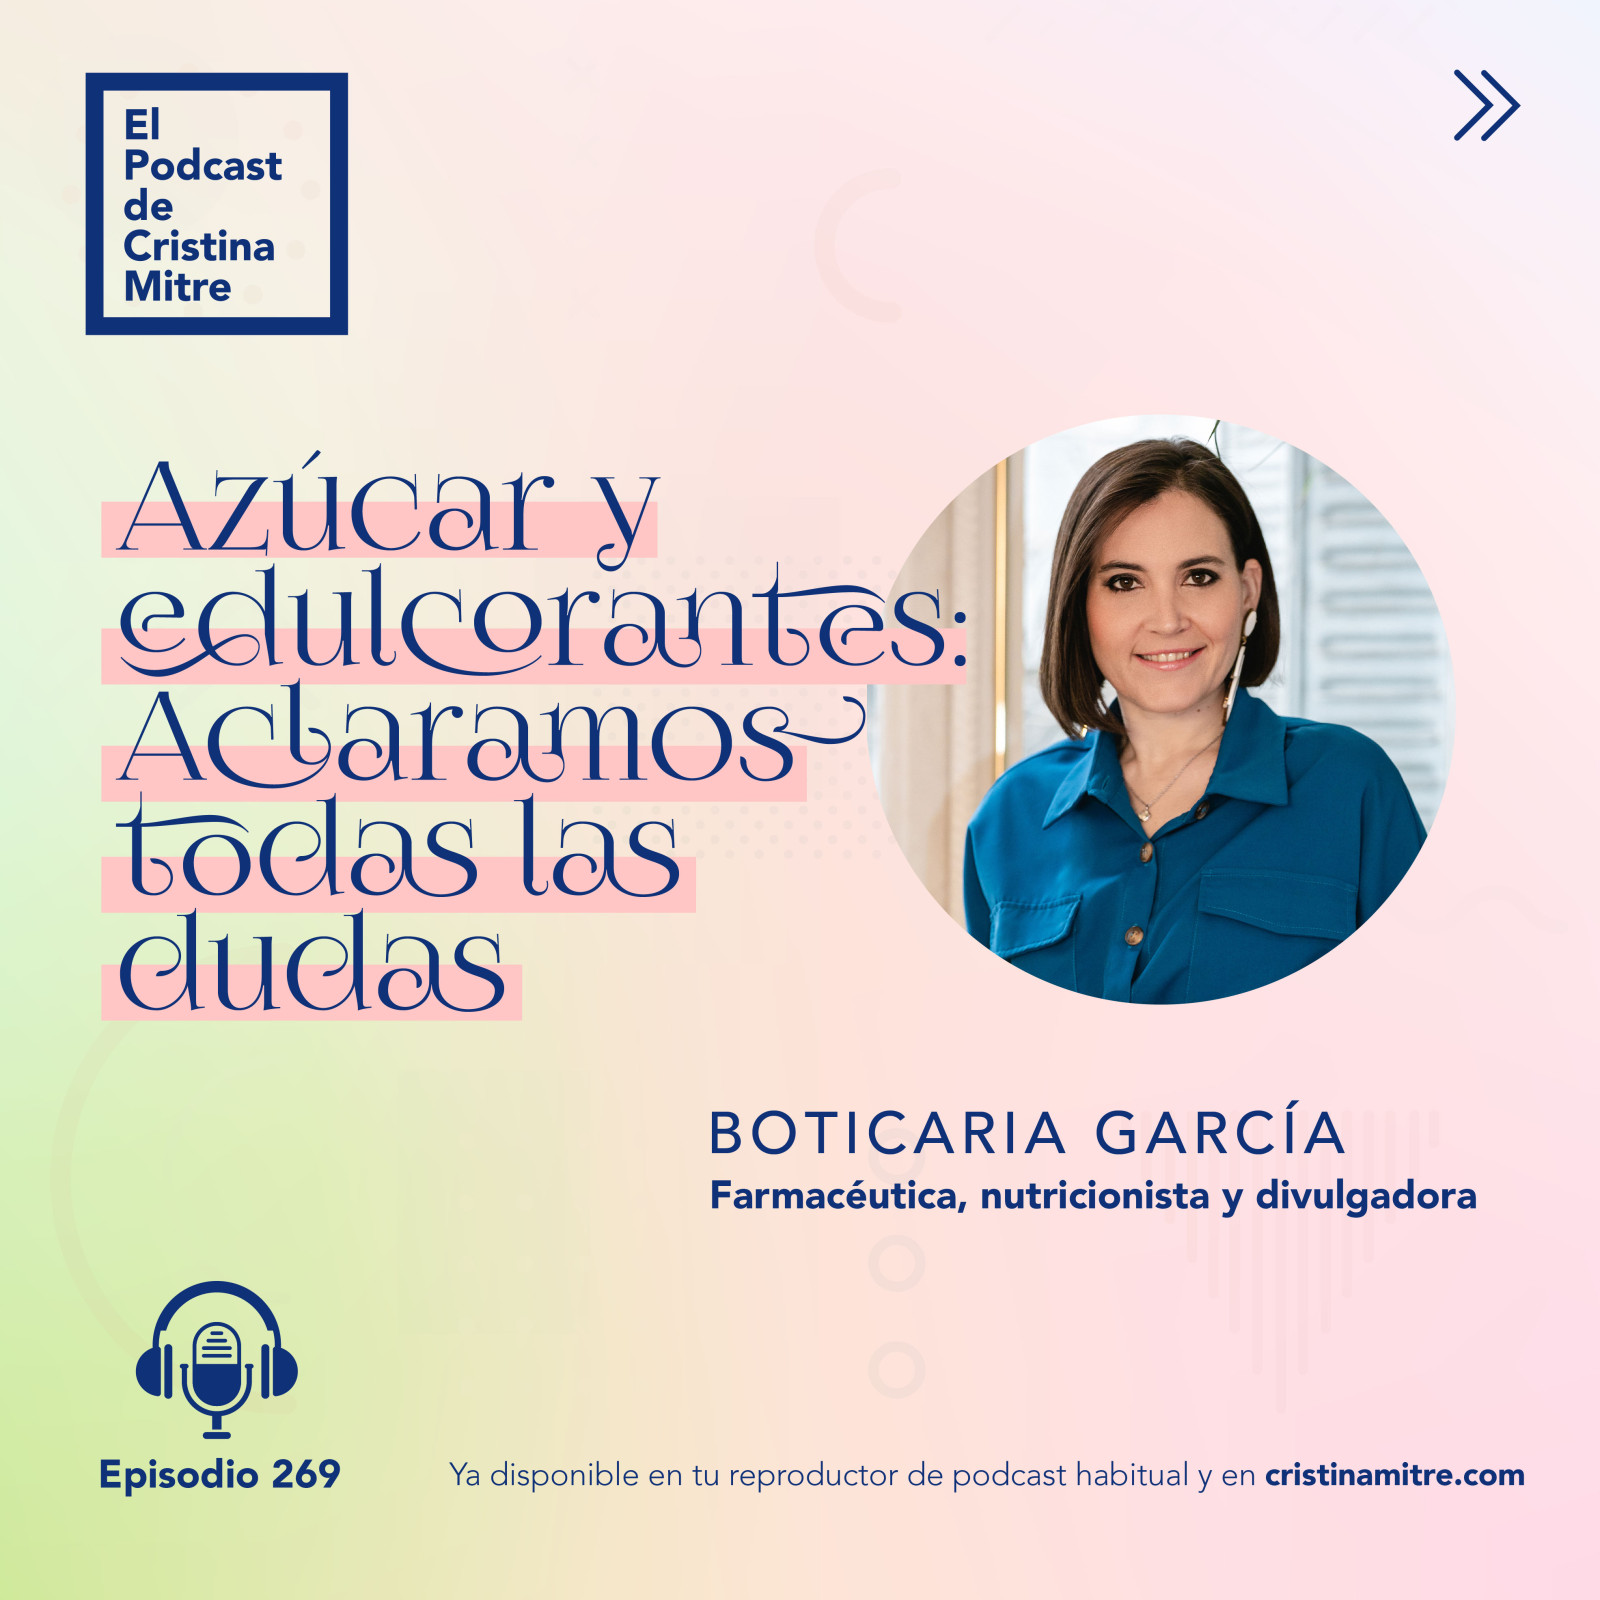 Podcast de Cristina Mitre Boticaria Garcia azucar